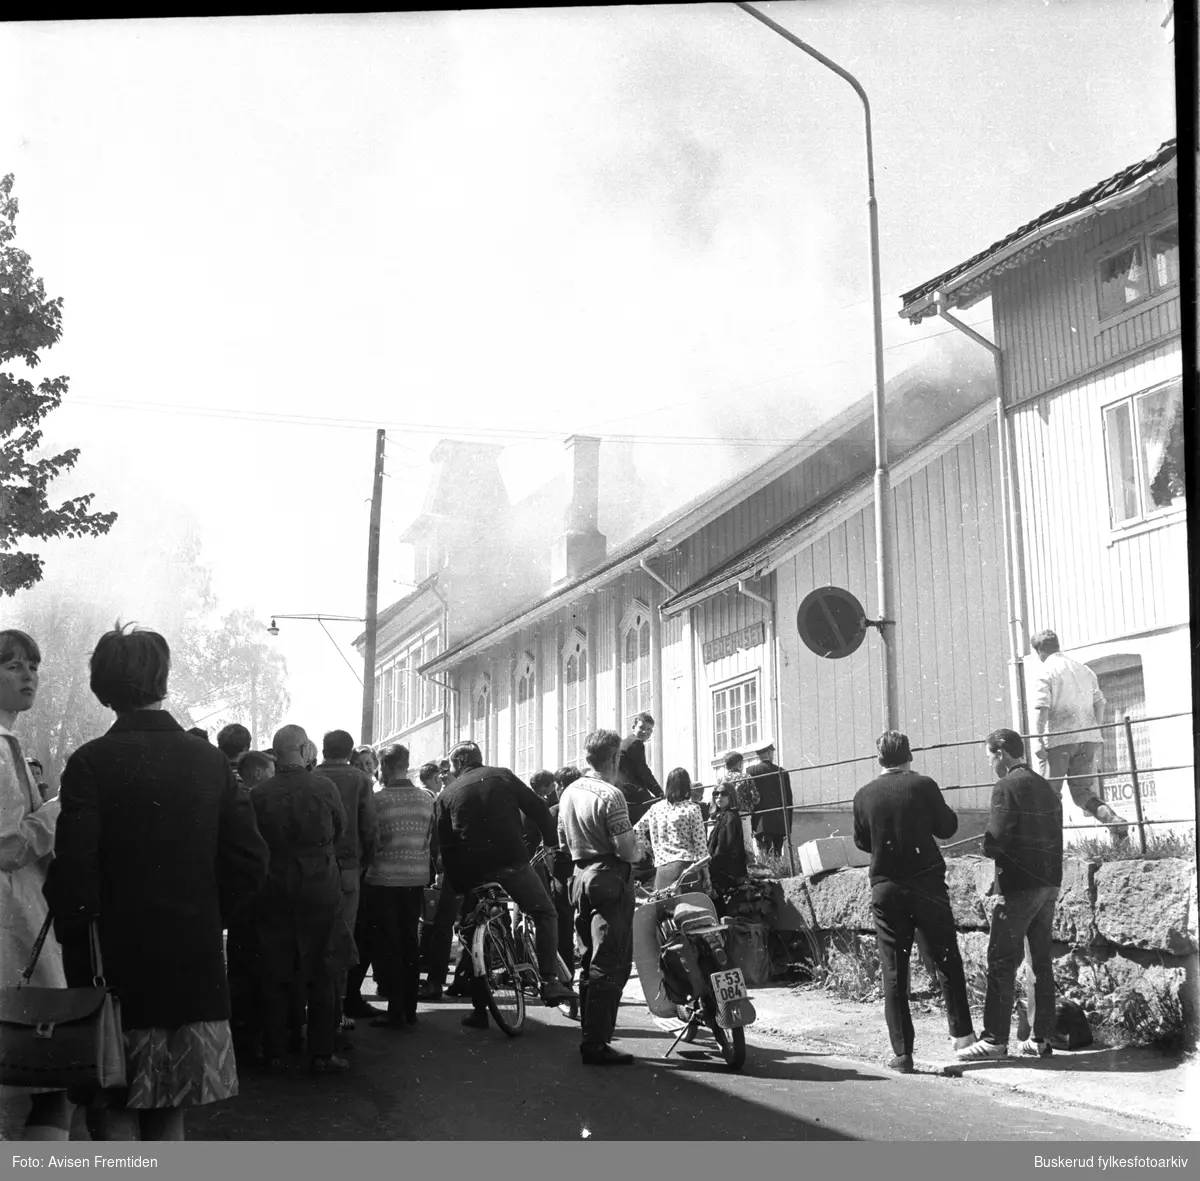 Brann i Askveien, i bedehuset. i Hønefoss 
14. juni 1967
pressebilder
Brannbil
øvers i Stangsgate mot Askveien